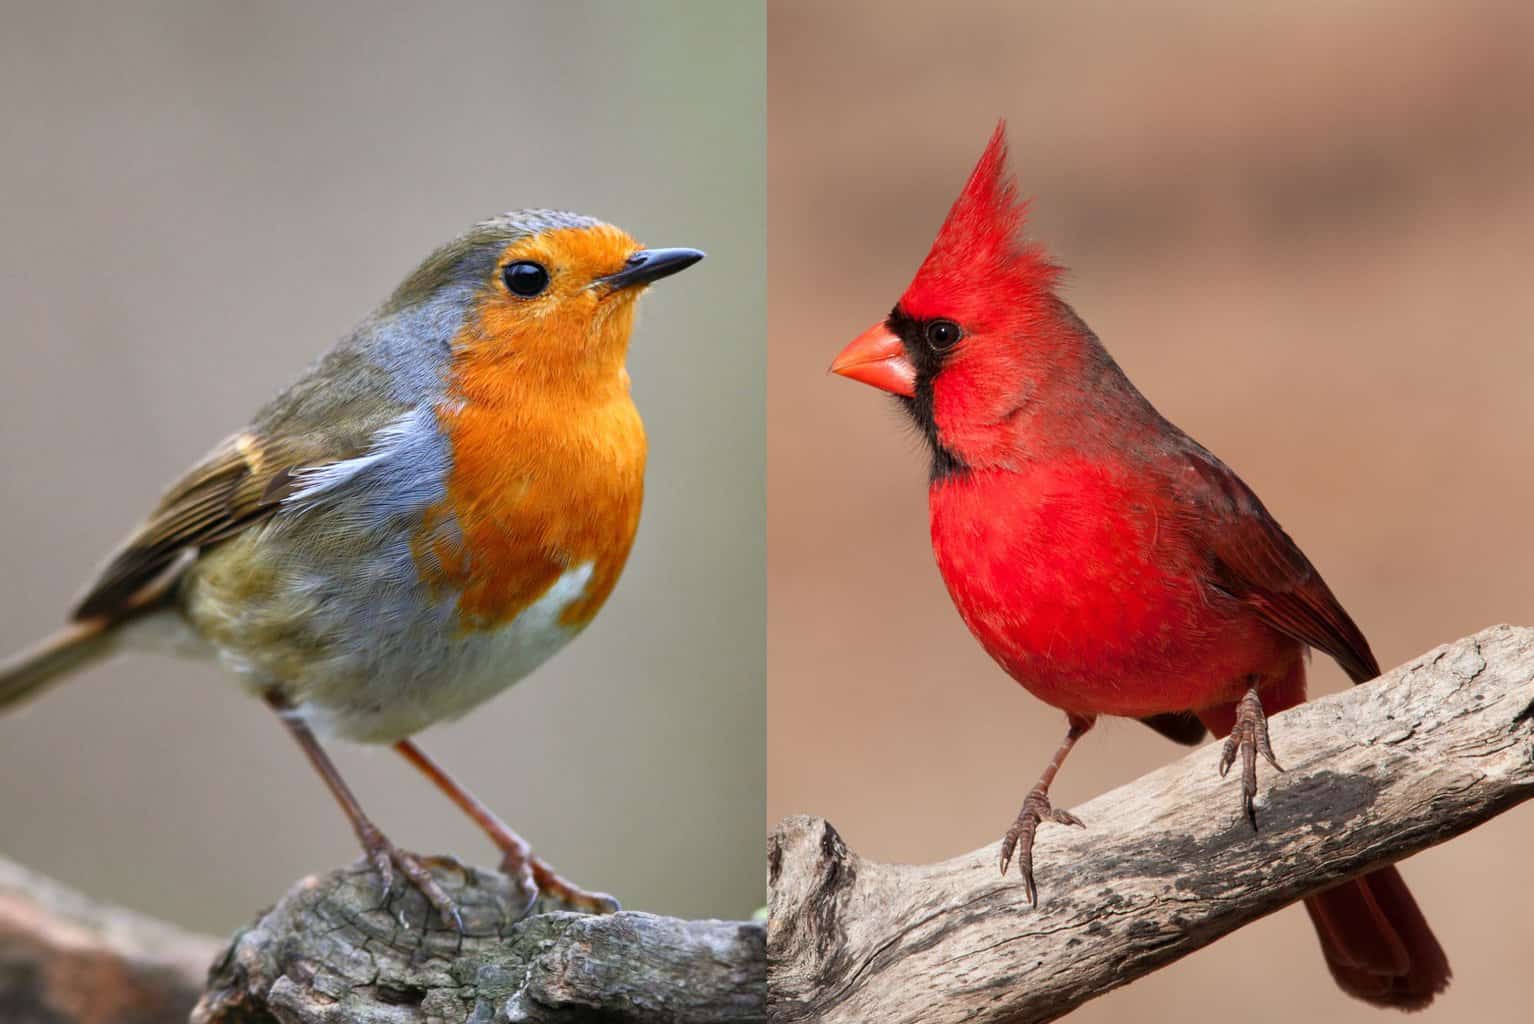 Red Robin vs Cardinal: ¡Sí, hay una diferencia!